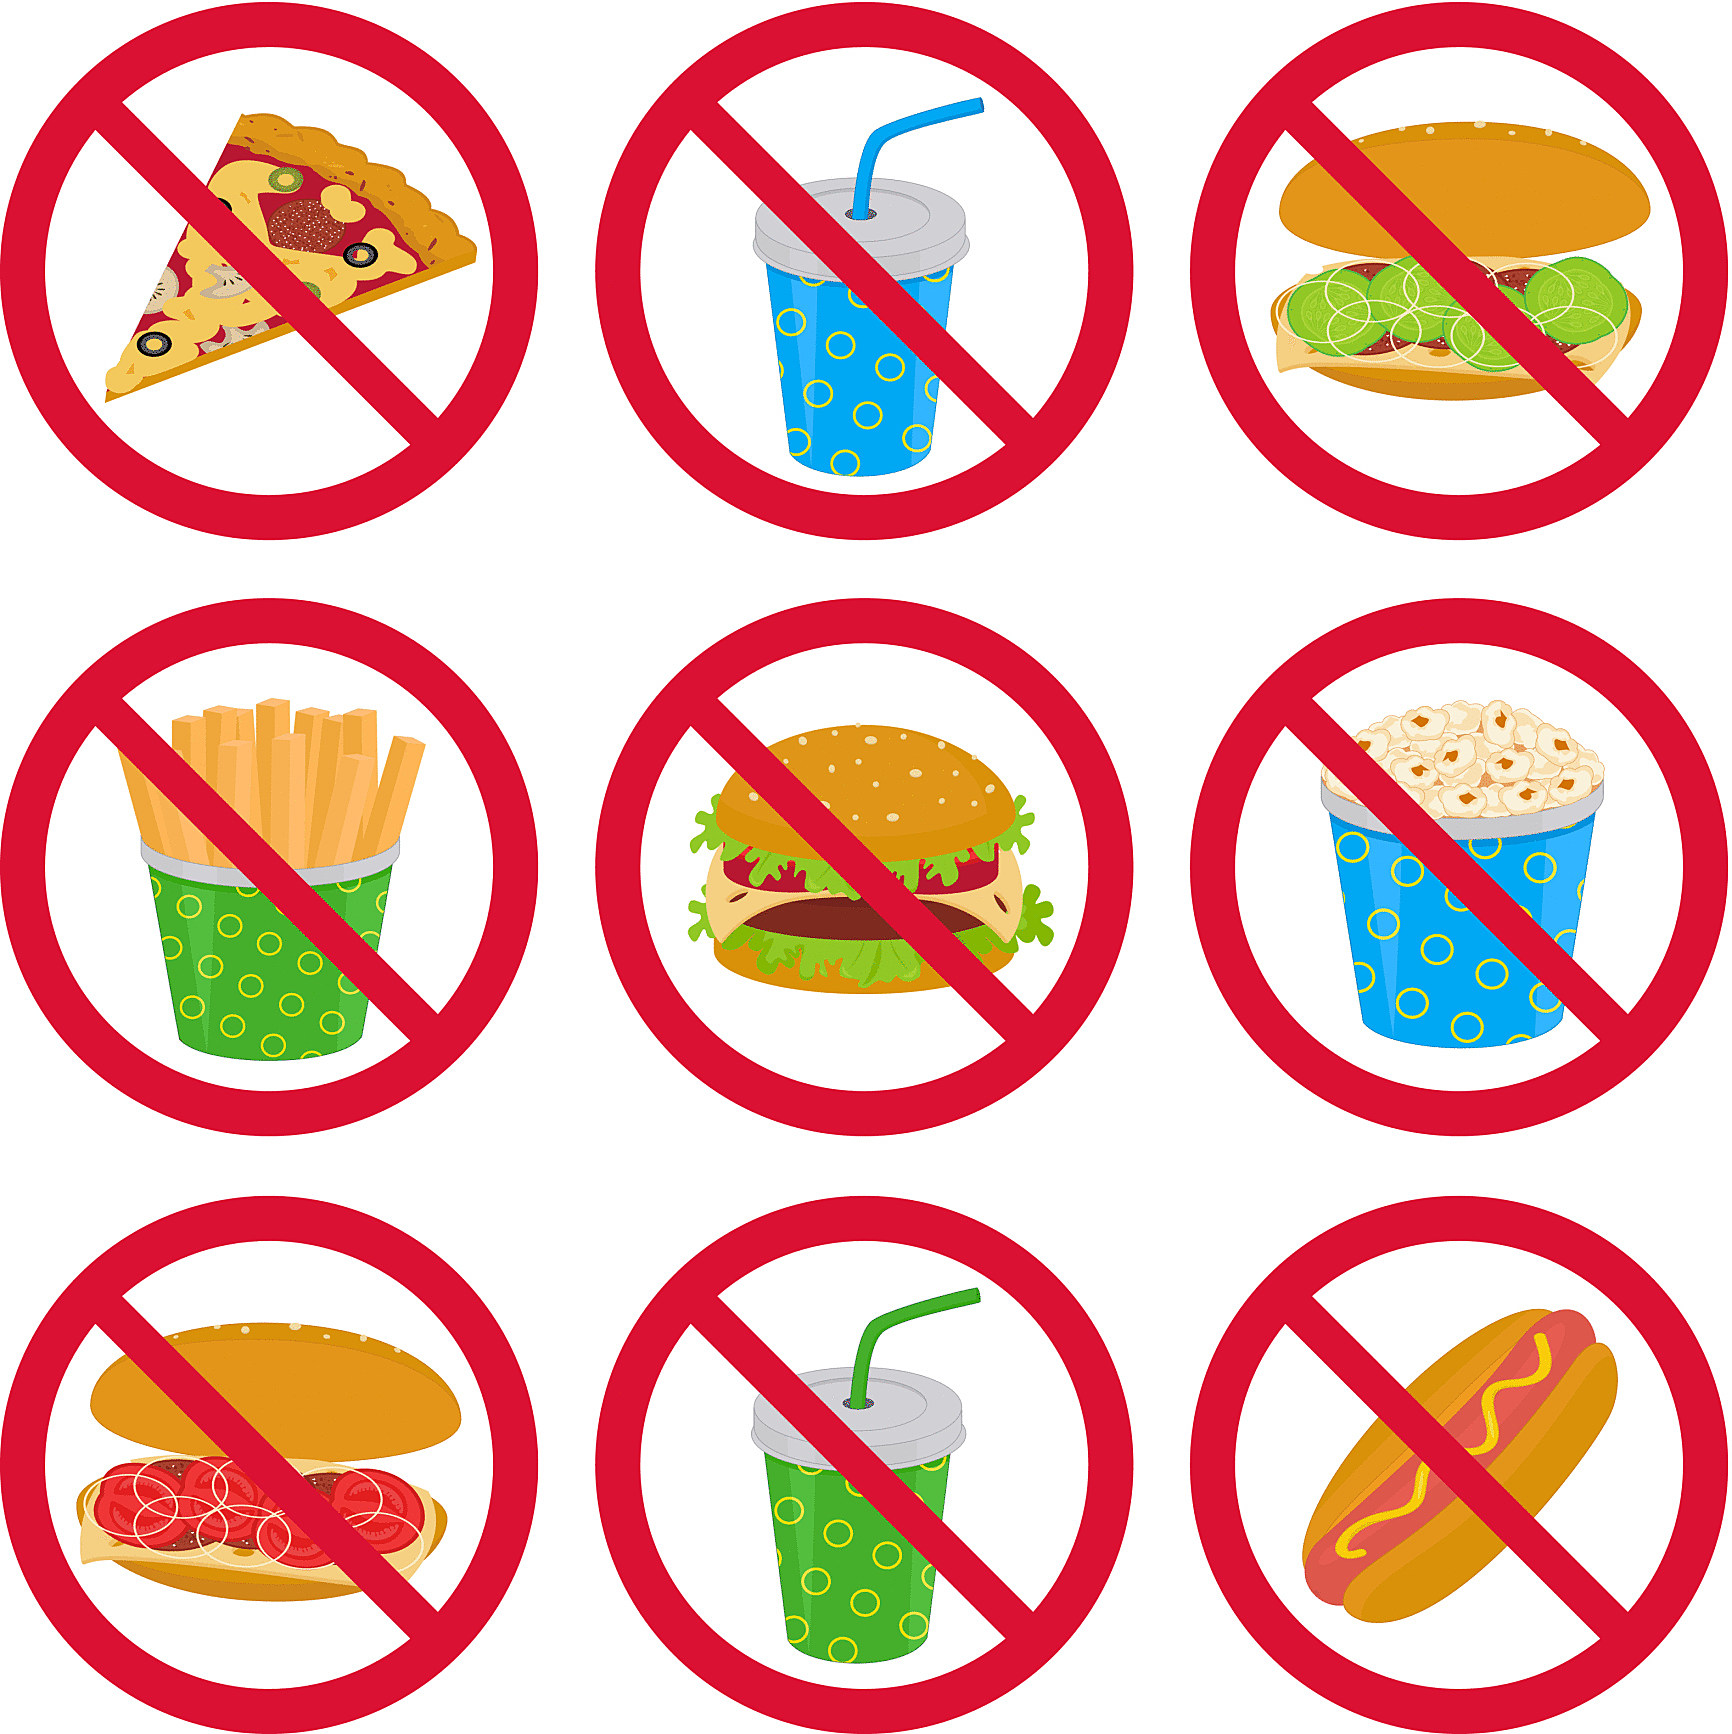 10 апреля что можно что нельзя. Запрет на вредную пищу. Знаки здорового образа жизни. Знак запрета вредной еды. Рисунок вредные привычки в еде.